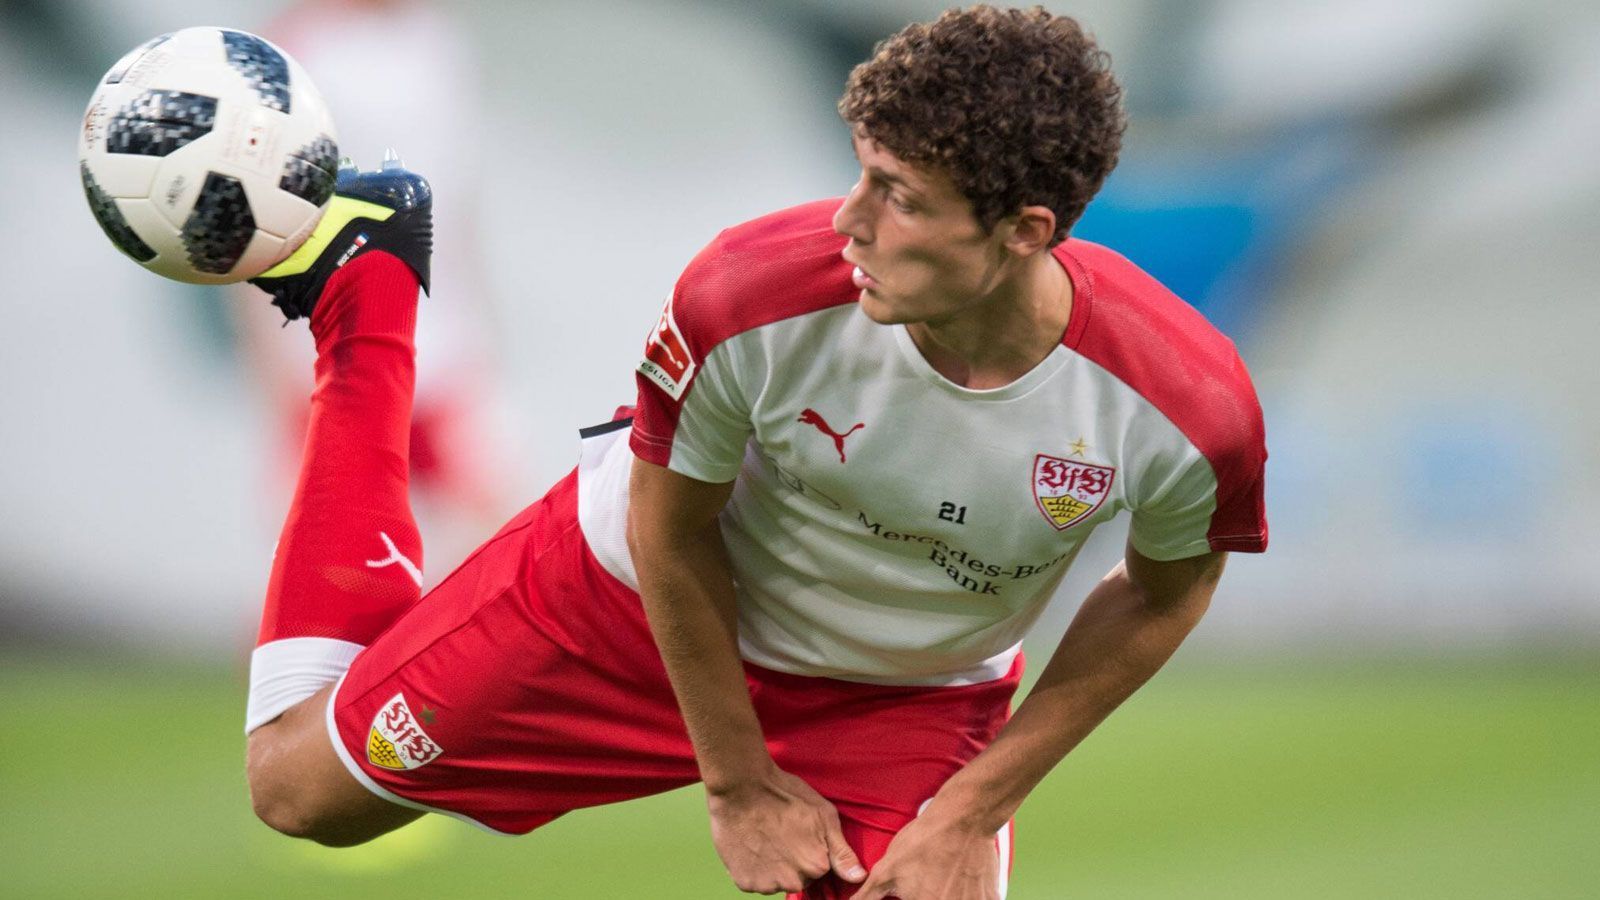 
                <strong>Platz 5: VfB Stuttgart</strong><br>
                Nach Platz 7 im Vorjahr bestätigen die Schwaben ihre starke Rückrunde und kommen auch 2018/19 unter die Besten. Diesmal sogar auf Rang 5.
              